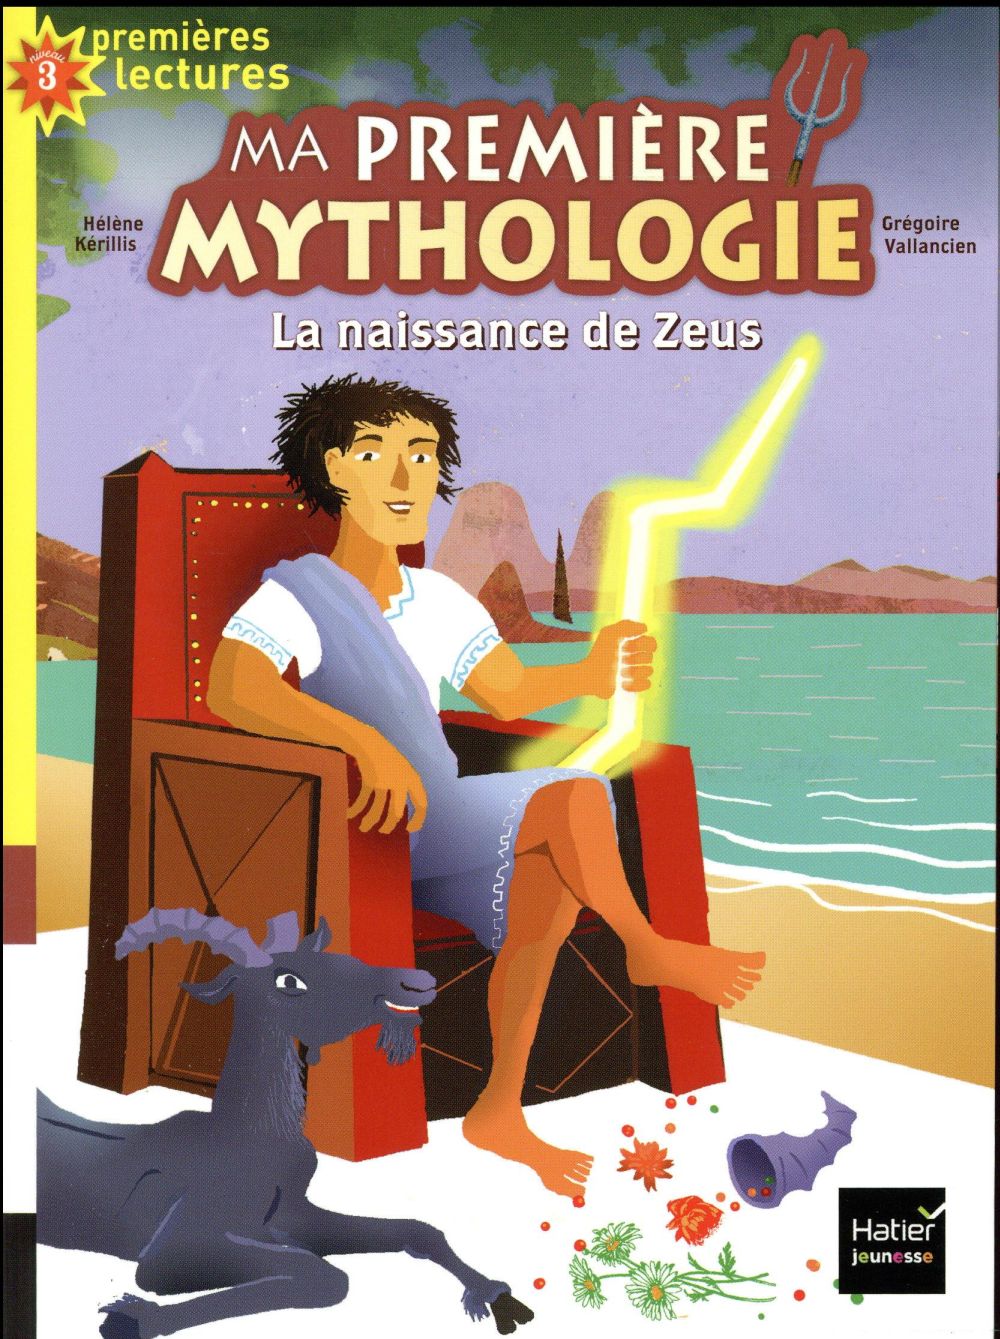 MA PREMIERE MYTHOLOGIE - T11 - MA PREMIERE MYTHOLOGIE - LA NAISSANCE DE ZEUS CP/CE1 6/7 ANS